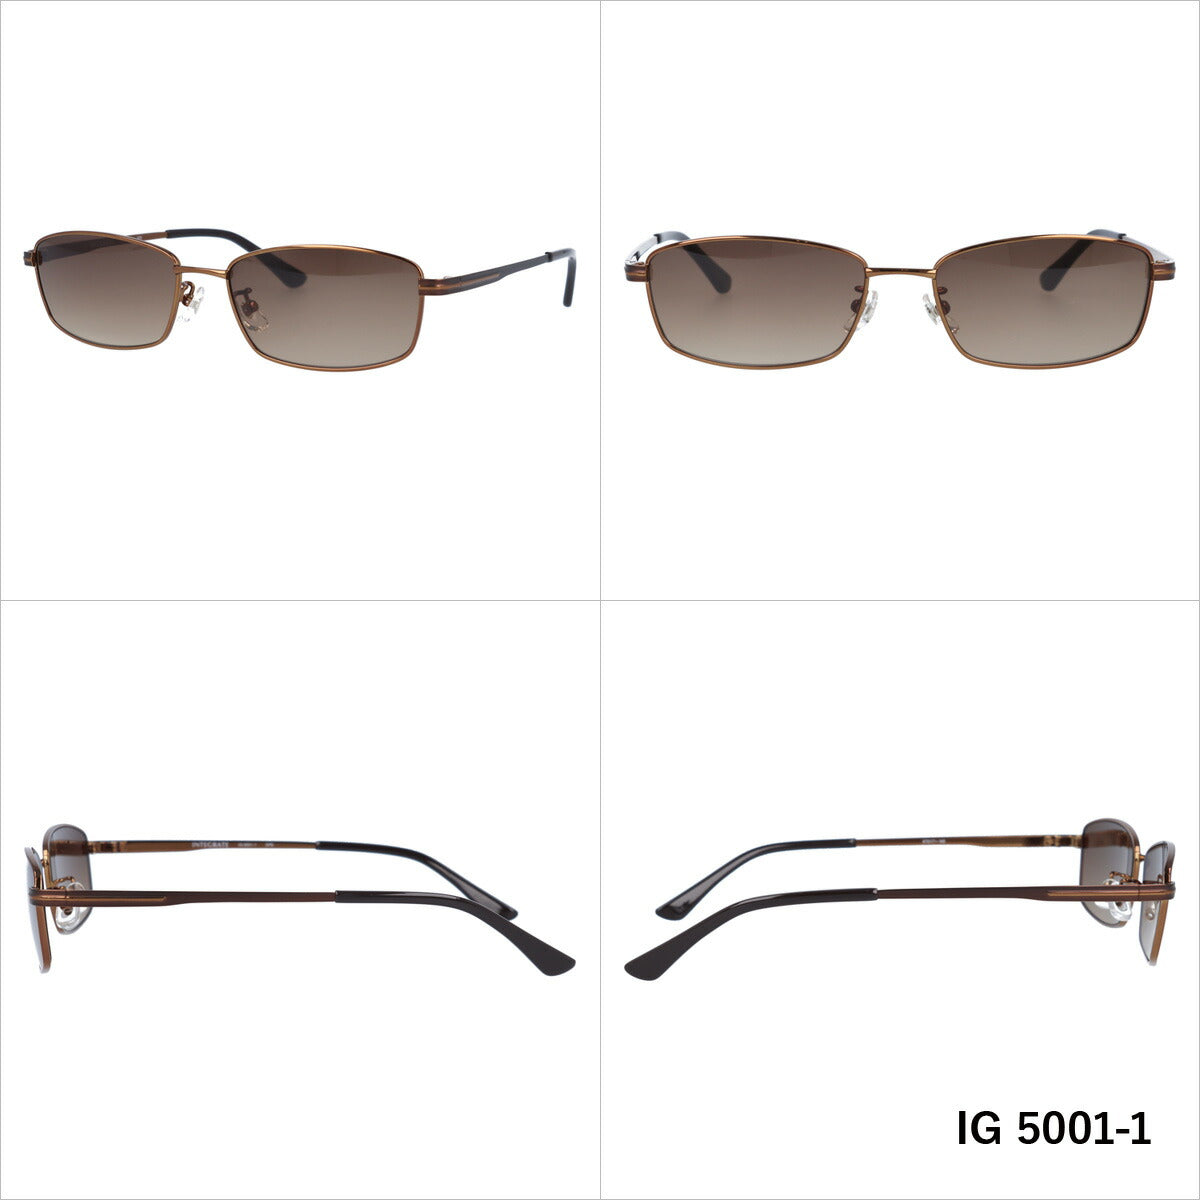 おしゃれ サングラス INTEGRATE インテグレート IG 5001 全3色 57サイズ アジアンフィット スクエア型 メンズ レディース UVカット 紫外線 対策 ブランド 眼鏡 メガネ アイウェア 人気 おすすめ ラッピング無料